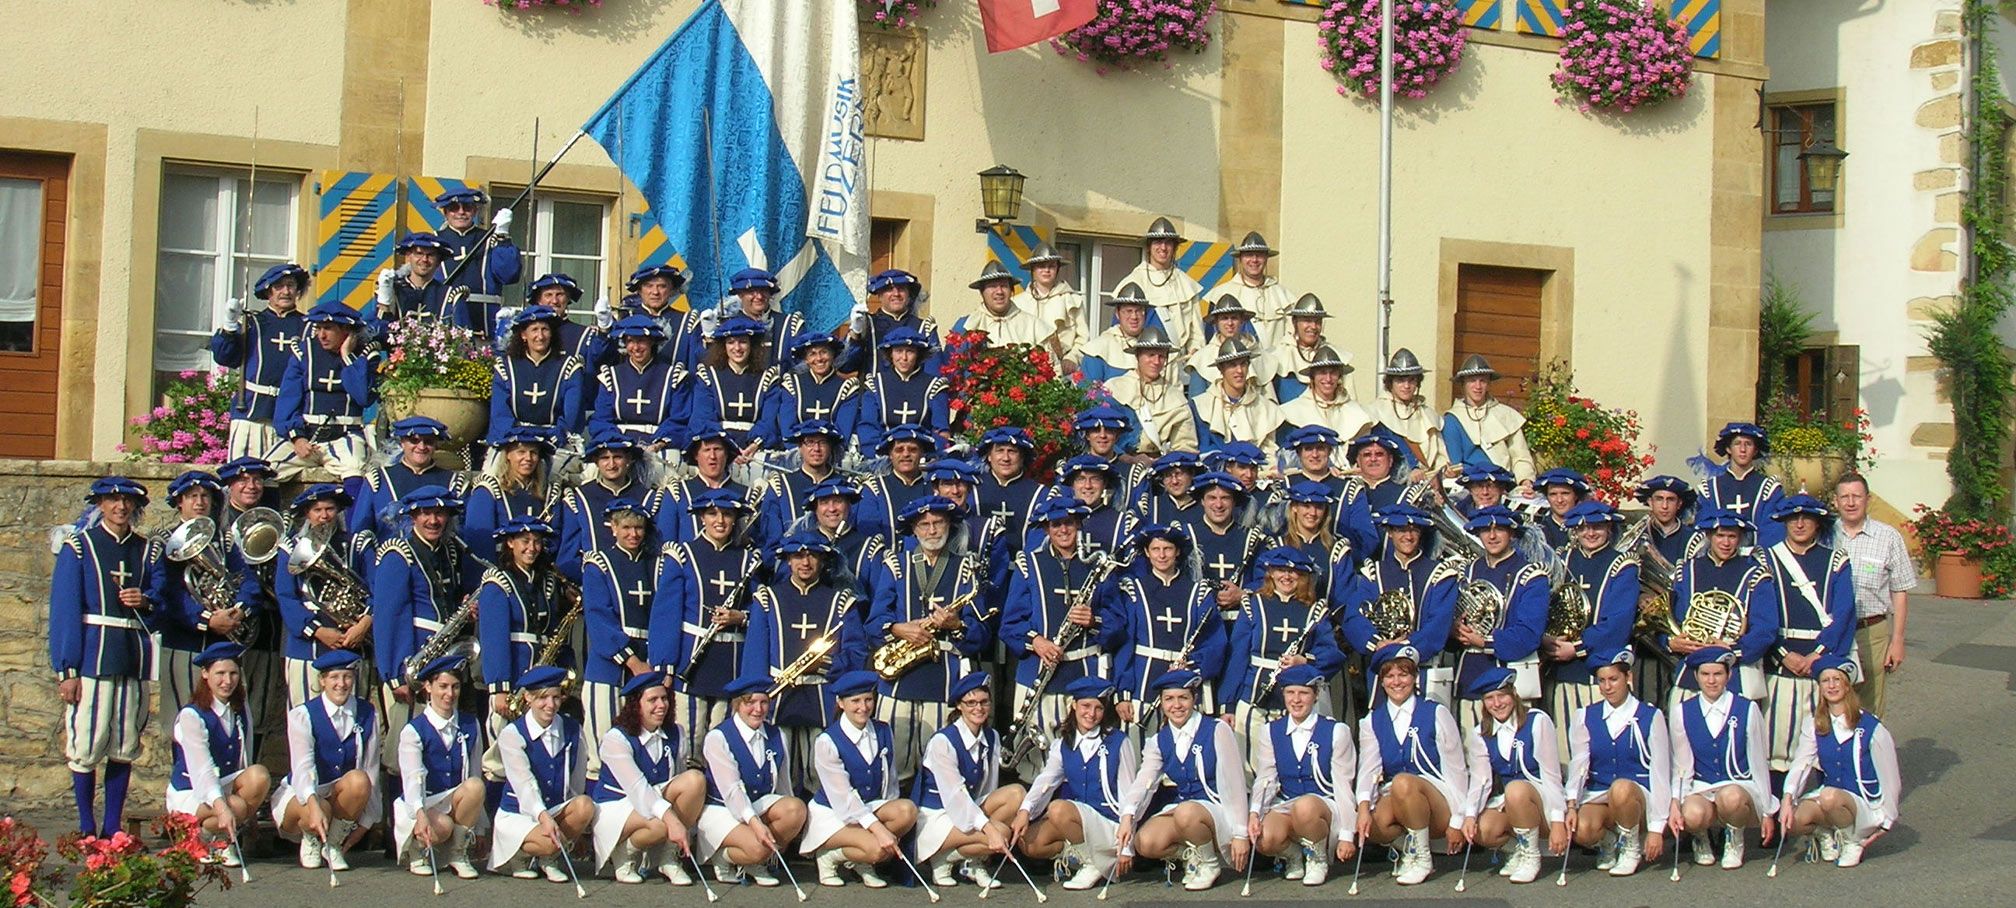 Die Lucerne Marching Band ist die Paradeformation der über 100-jährigen Feldmusik Luzern